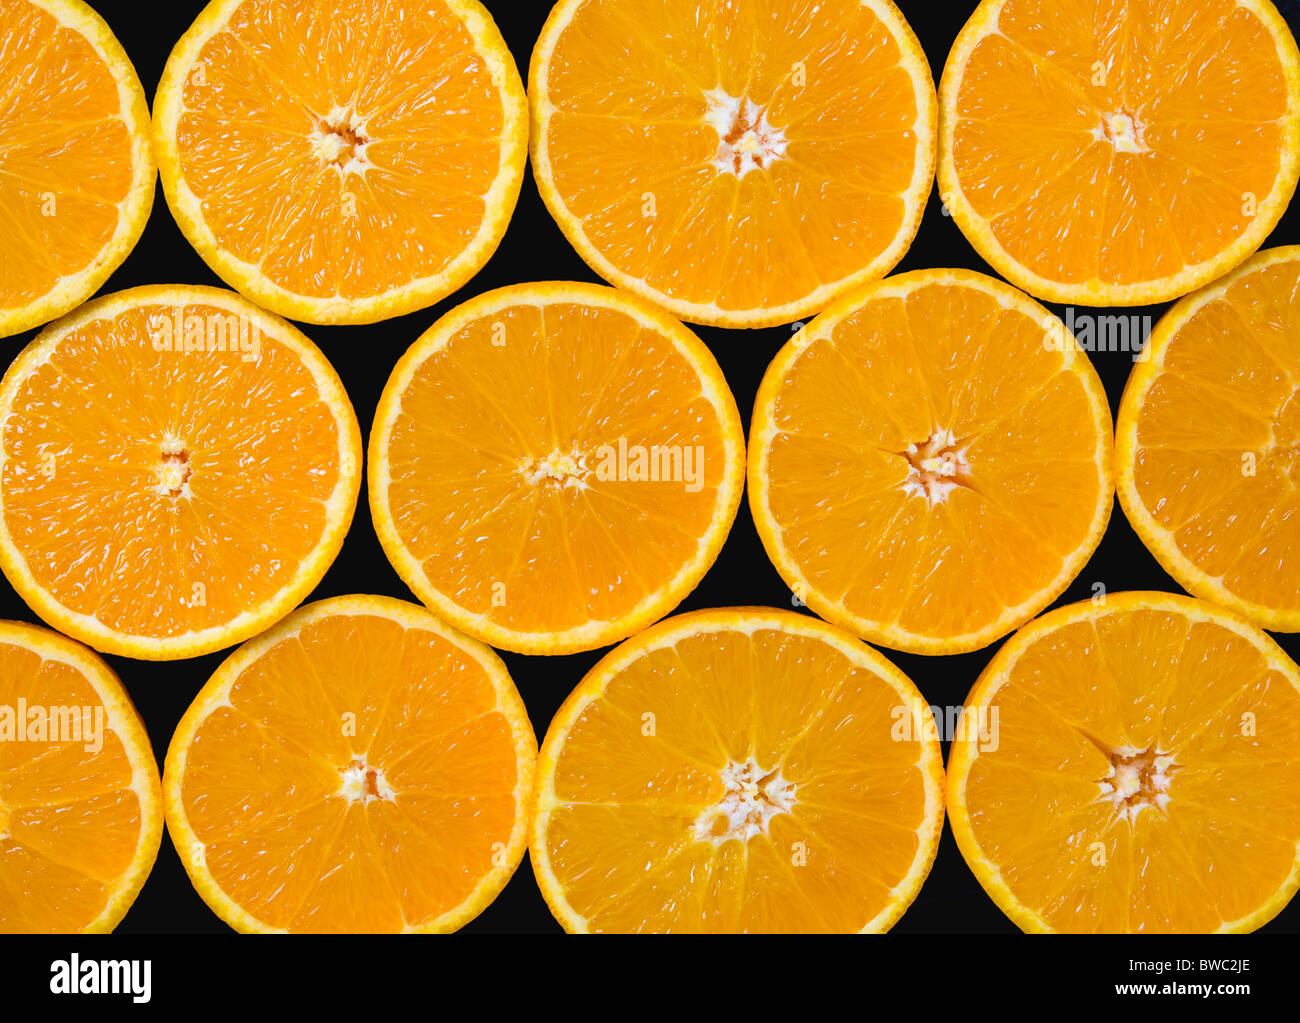 Lebensmittel, Obst, Orangen, Overhead Blick auf Gruppe von Orangen schneiden in der Hälfte zeigt Kern und Segmente vor einem schwarzen Hintergrund. Stockfoto